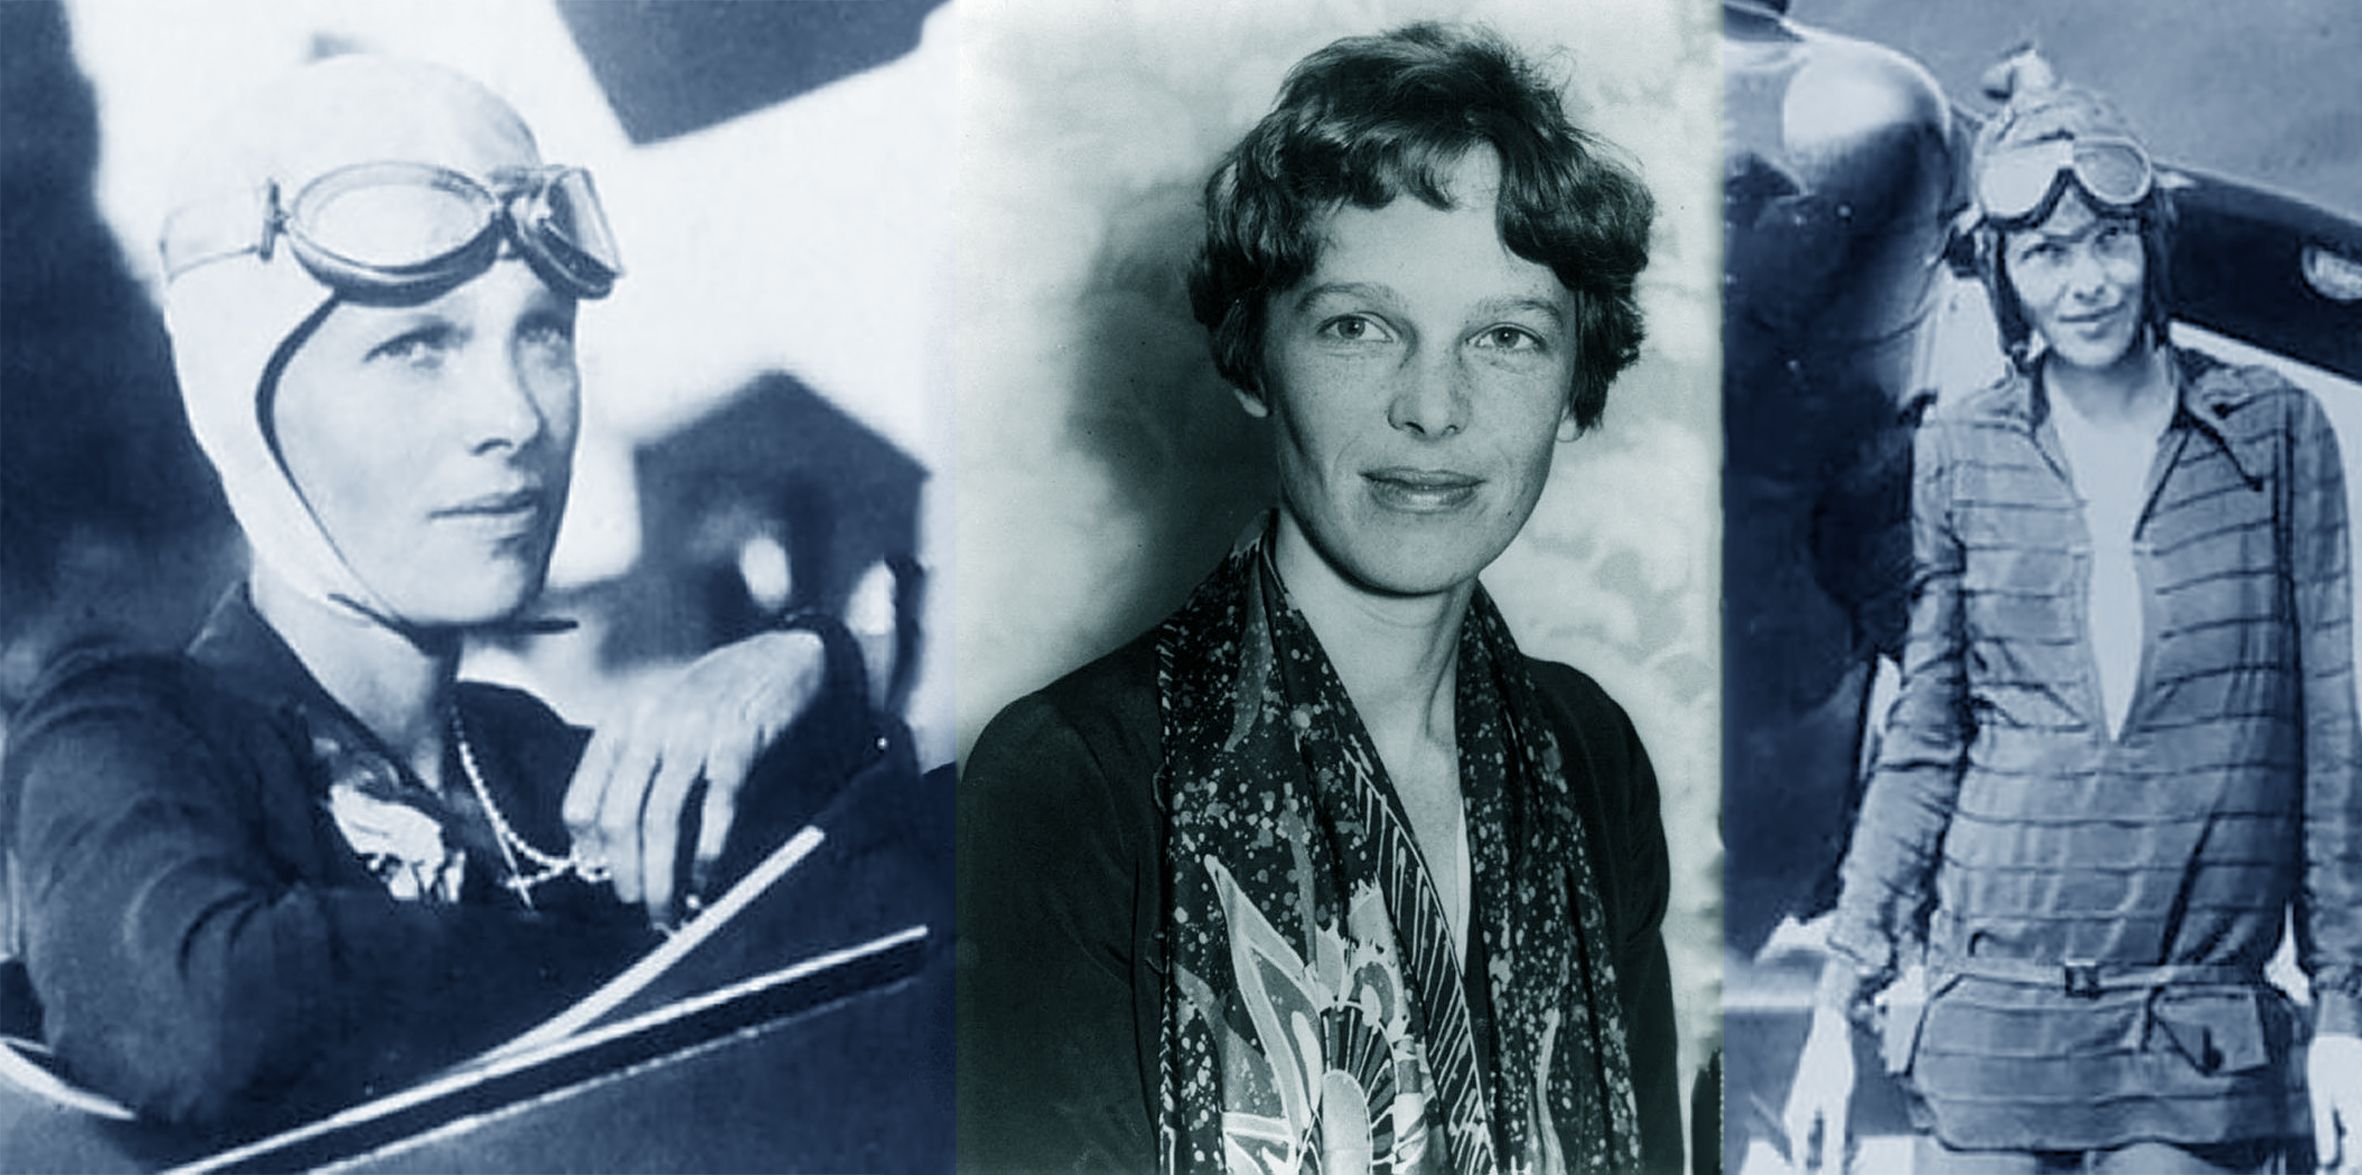 Η διάσημη Αμέλια Έρχαρτ  _Amelia Mary Earhart: αστικοί μύθοι και ατεκμηρίωτοι ισχυρισμοί